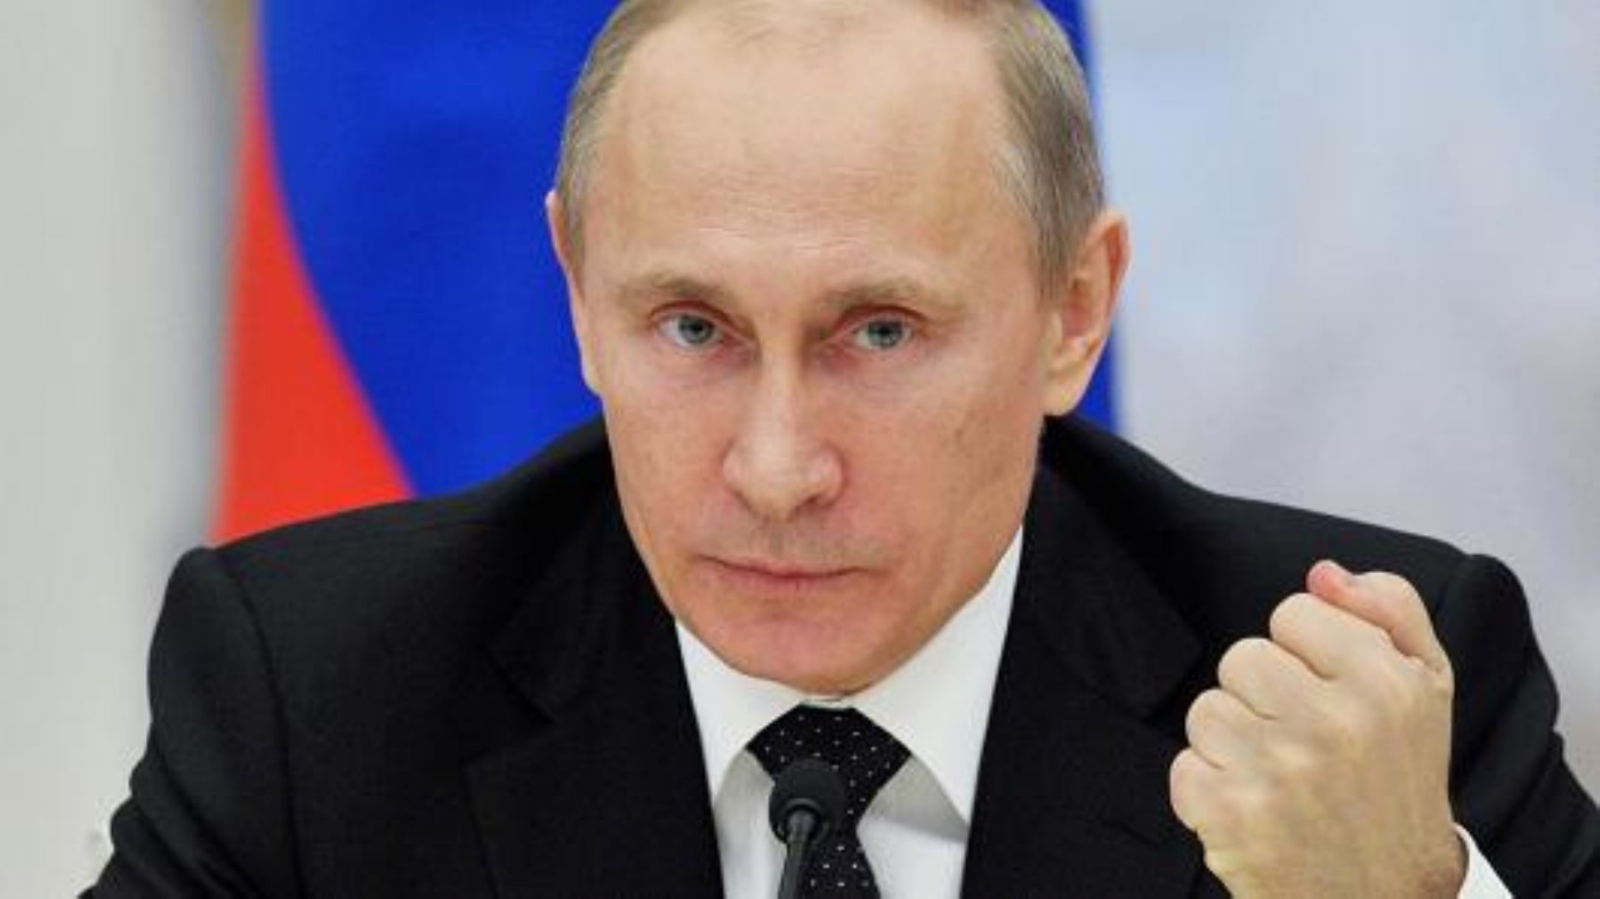 ¿Vladimir Putin dejará su cargo porque tiene Parkinson? Esto es lo que sabemos